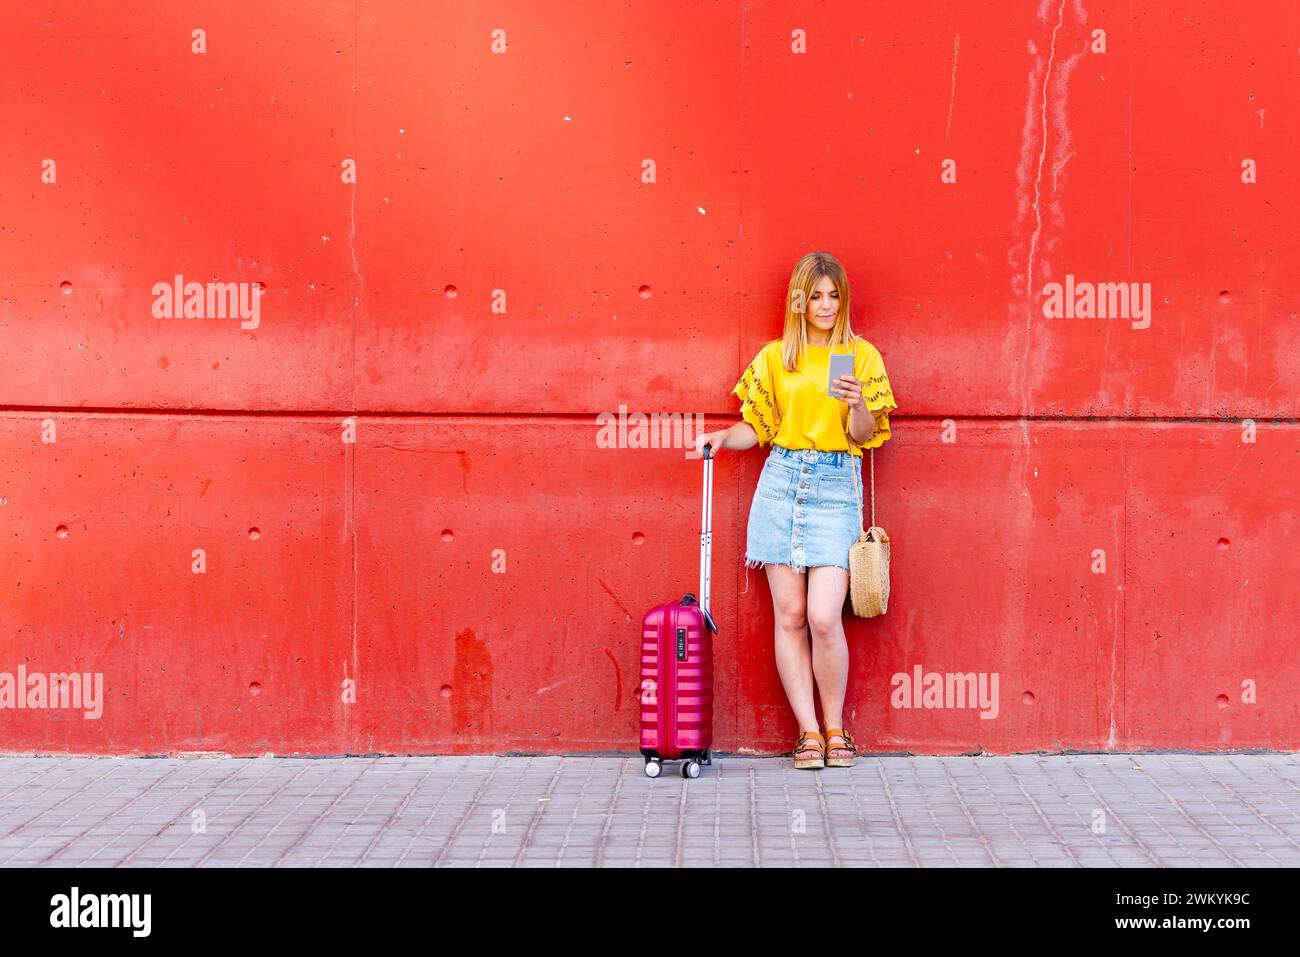 In diesem zeitgenössischen Bild steht eine junge Reisende vor einer markanten roten Wand, ihr rosafarbener Koffer an ihrer Seite. Sie ist mit der digitalen Welt verbunden Stockfoto